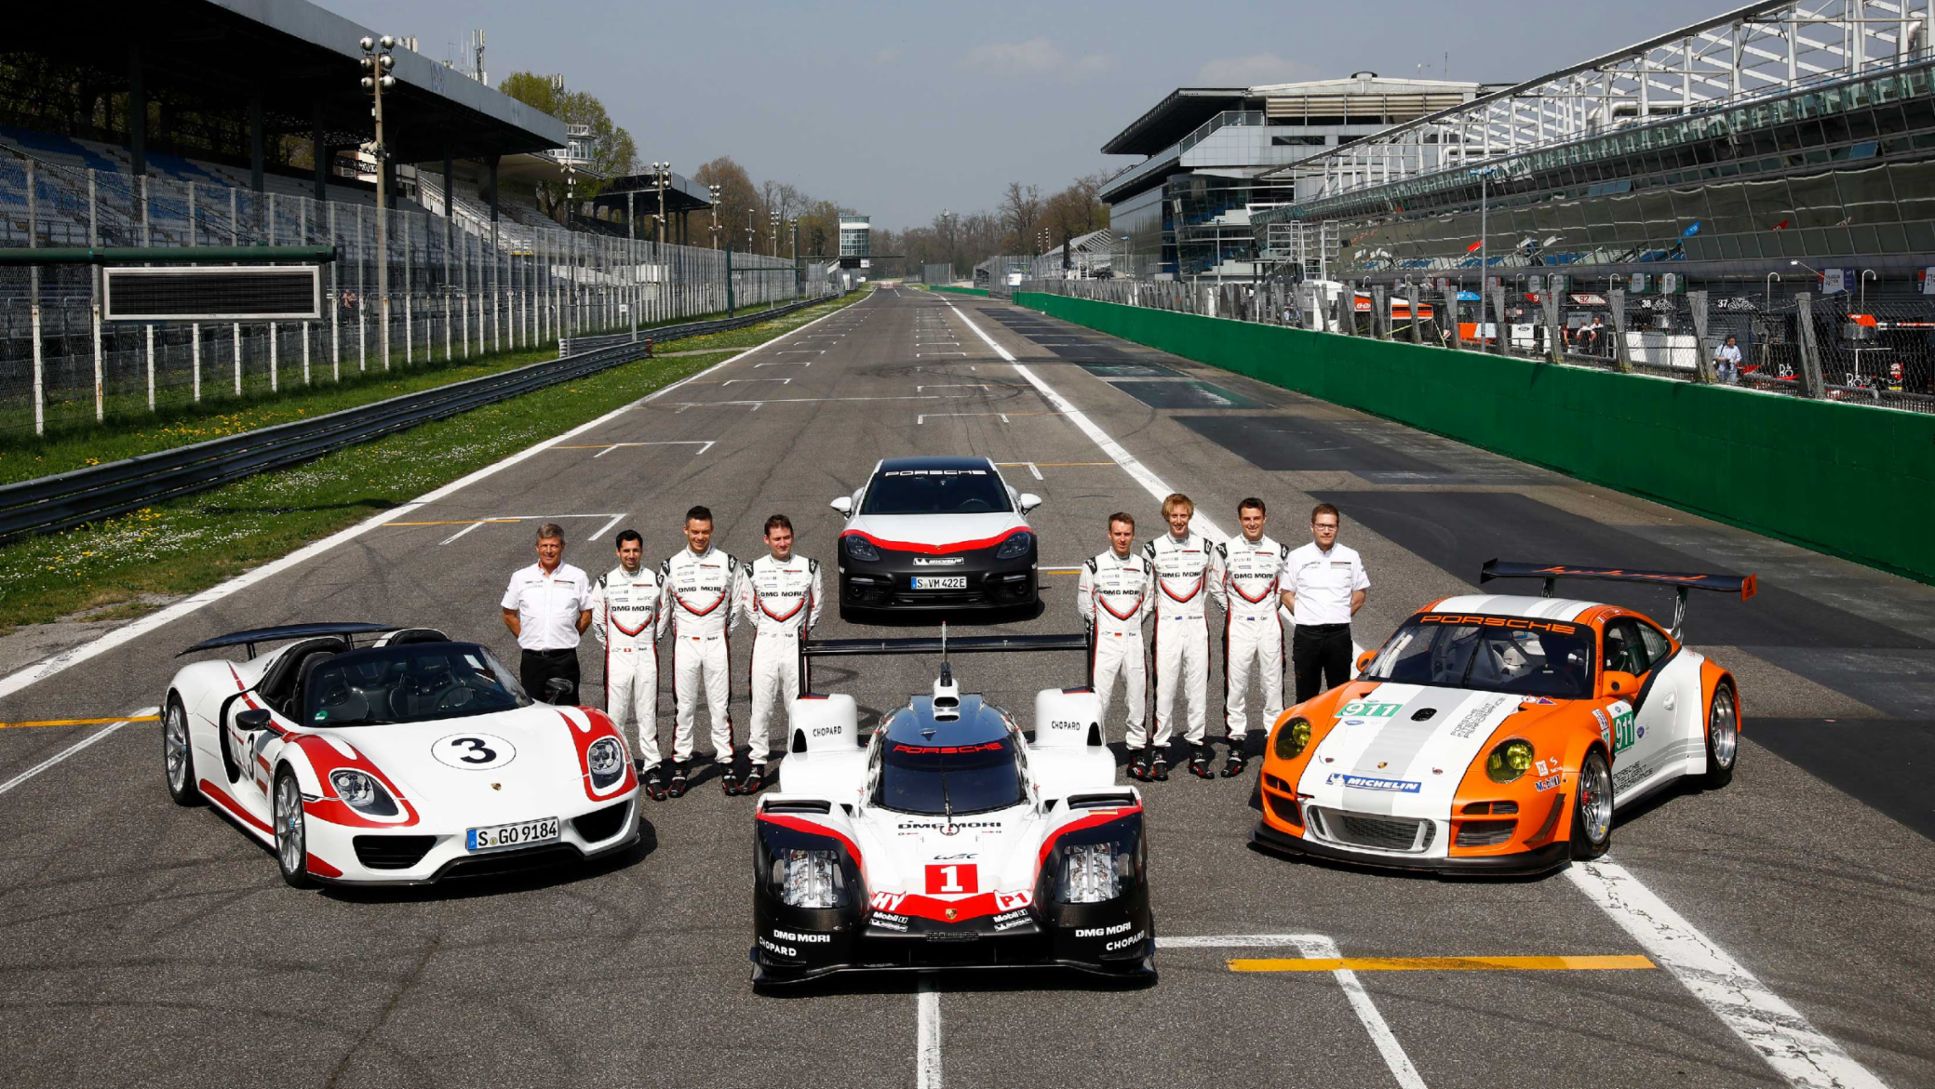 Vorstellung Porsche 919 Hybrid, Fahrer und Management Porsche LMP Team, Porsche 918 Spyder, 911 GT3 R Hybrid, Panamera Turbo S E-Hybrid (hinten), Monza, Porsche AG